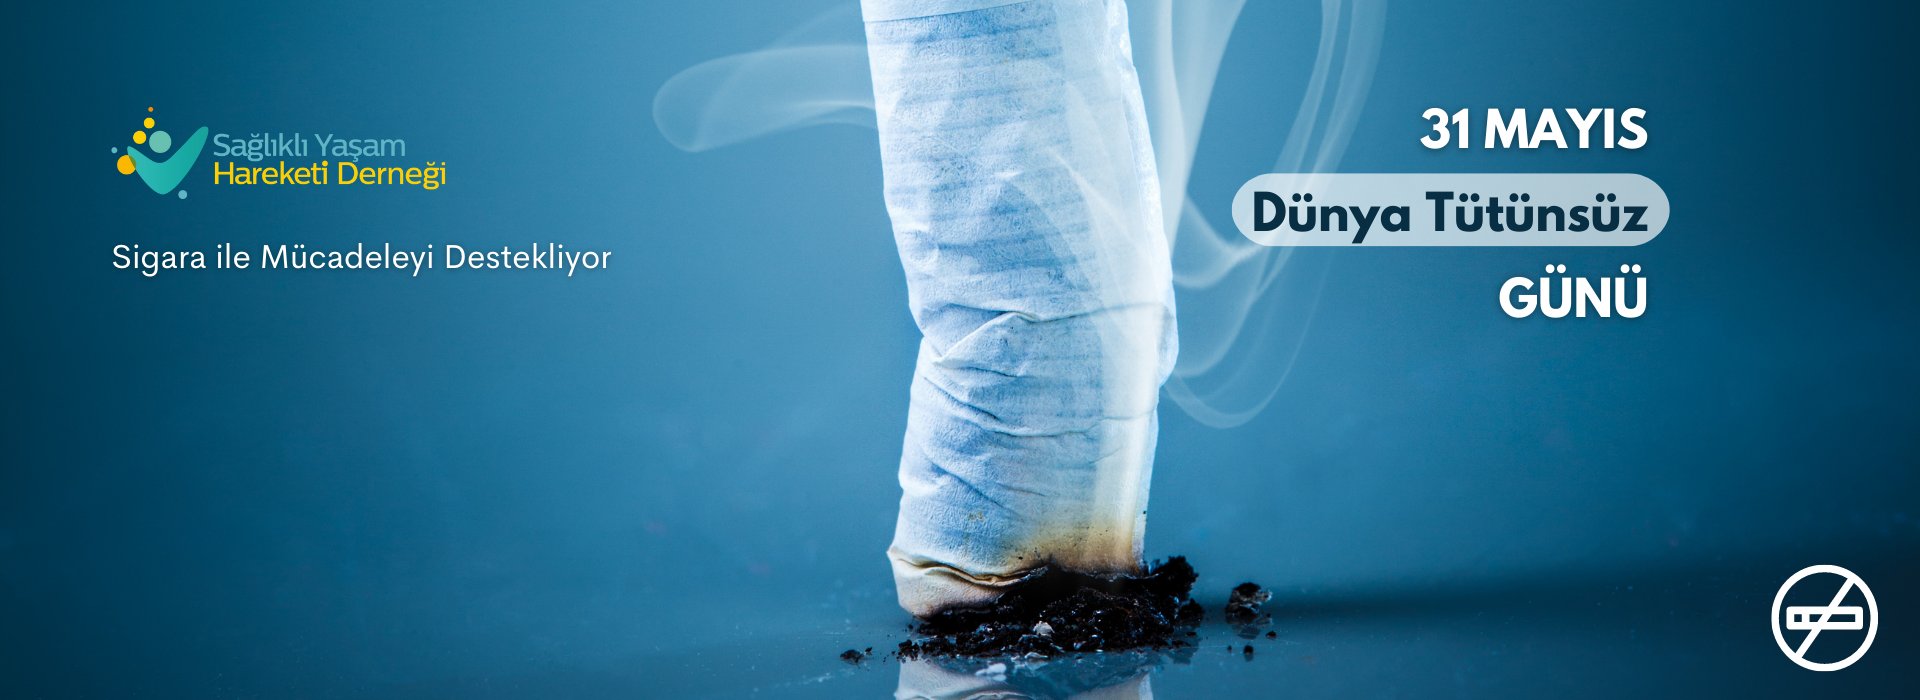 31 Mayıs Dünya Tütünsüz Günü’nde Sigarasız Bir Yaşam Çağrısı Yapıyoruz